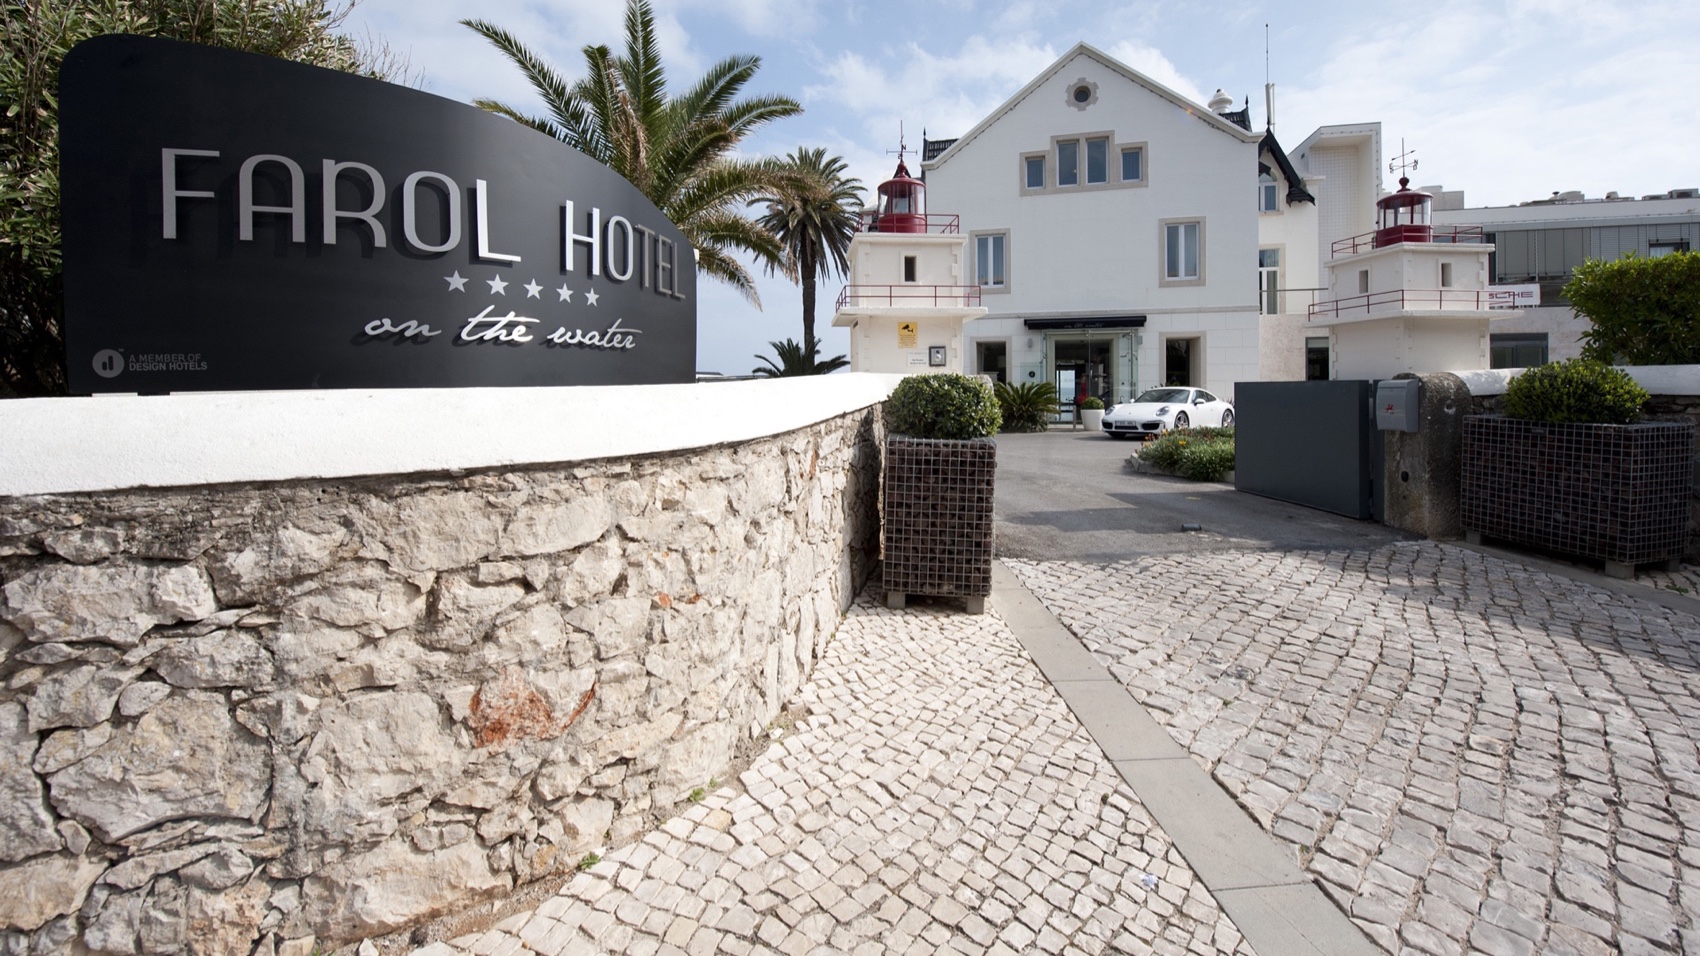 Portugal Hotel Farol